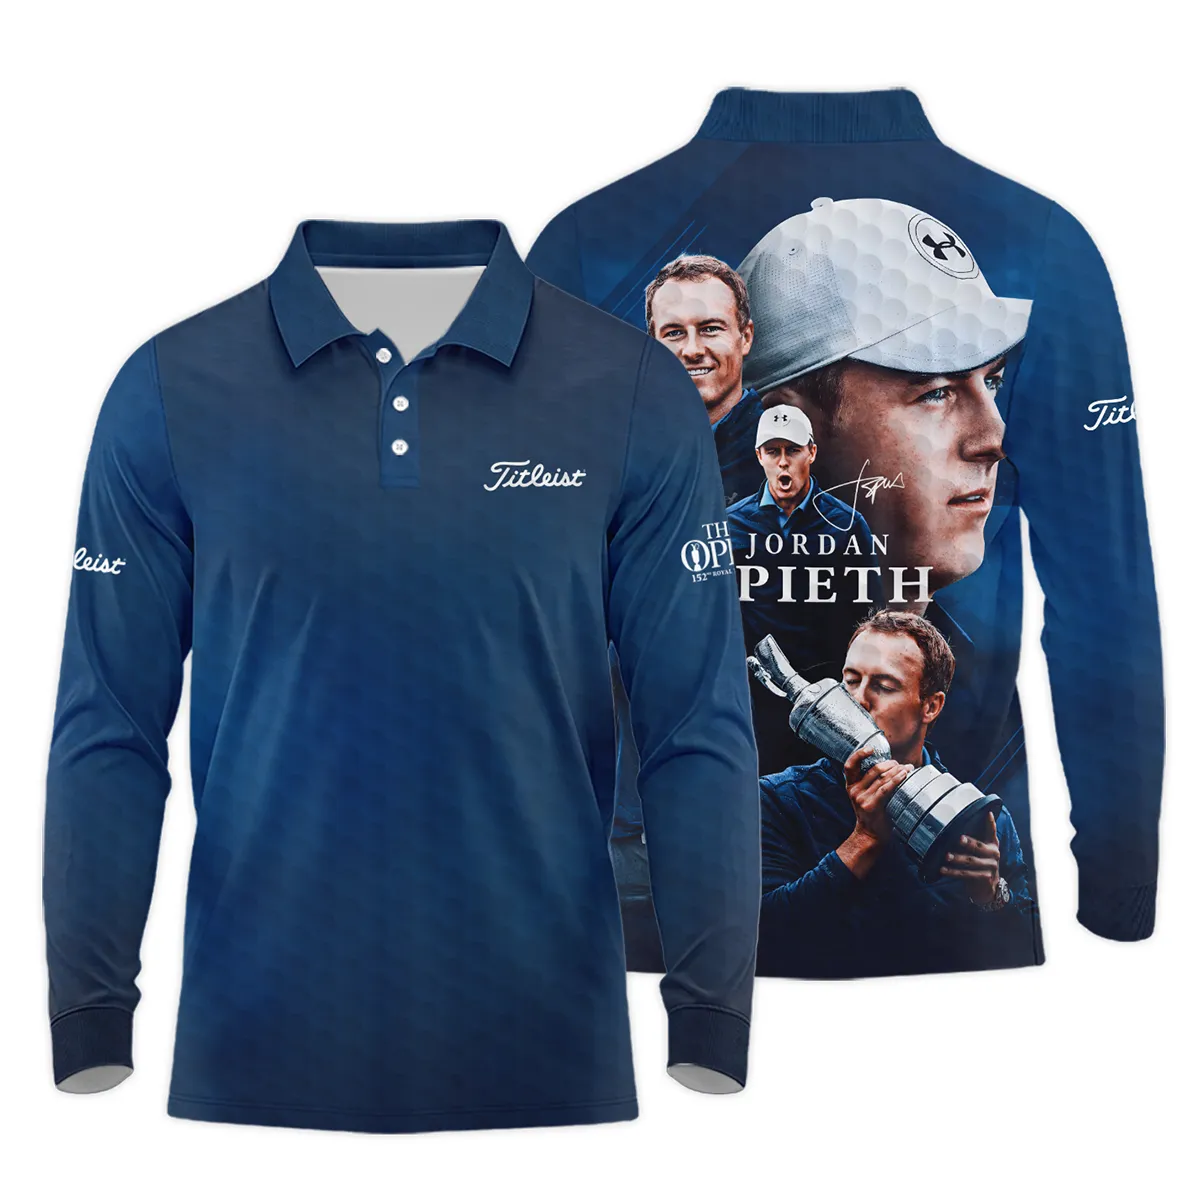 Golf Jordan Spieth Fans Loves 152nd The Open Championship Titleist Zipper Hoodie Shirt Style Classic